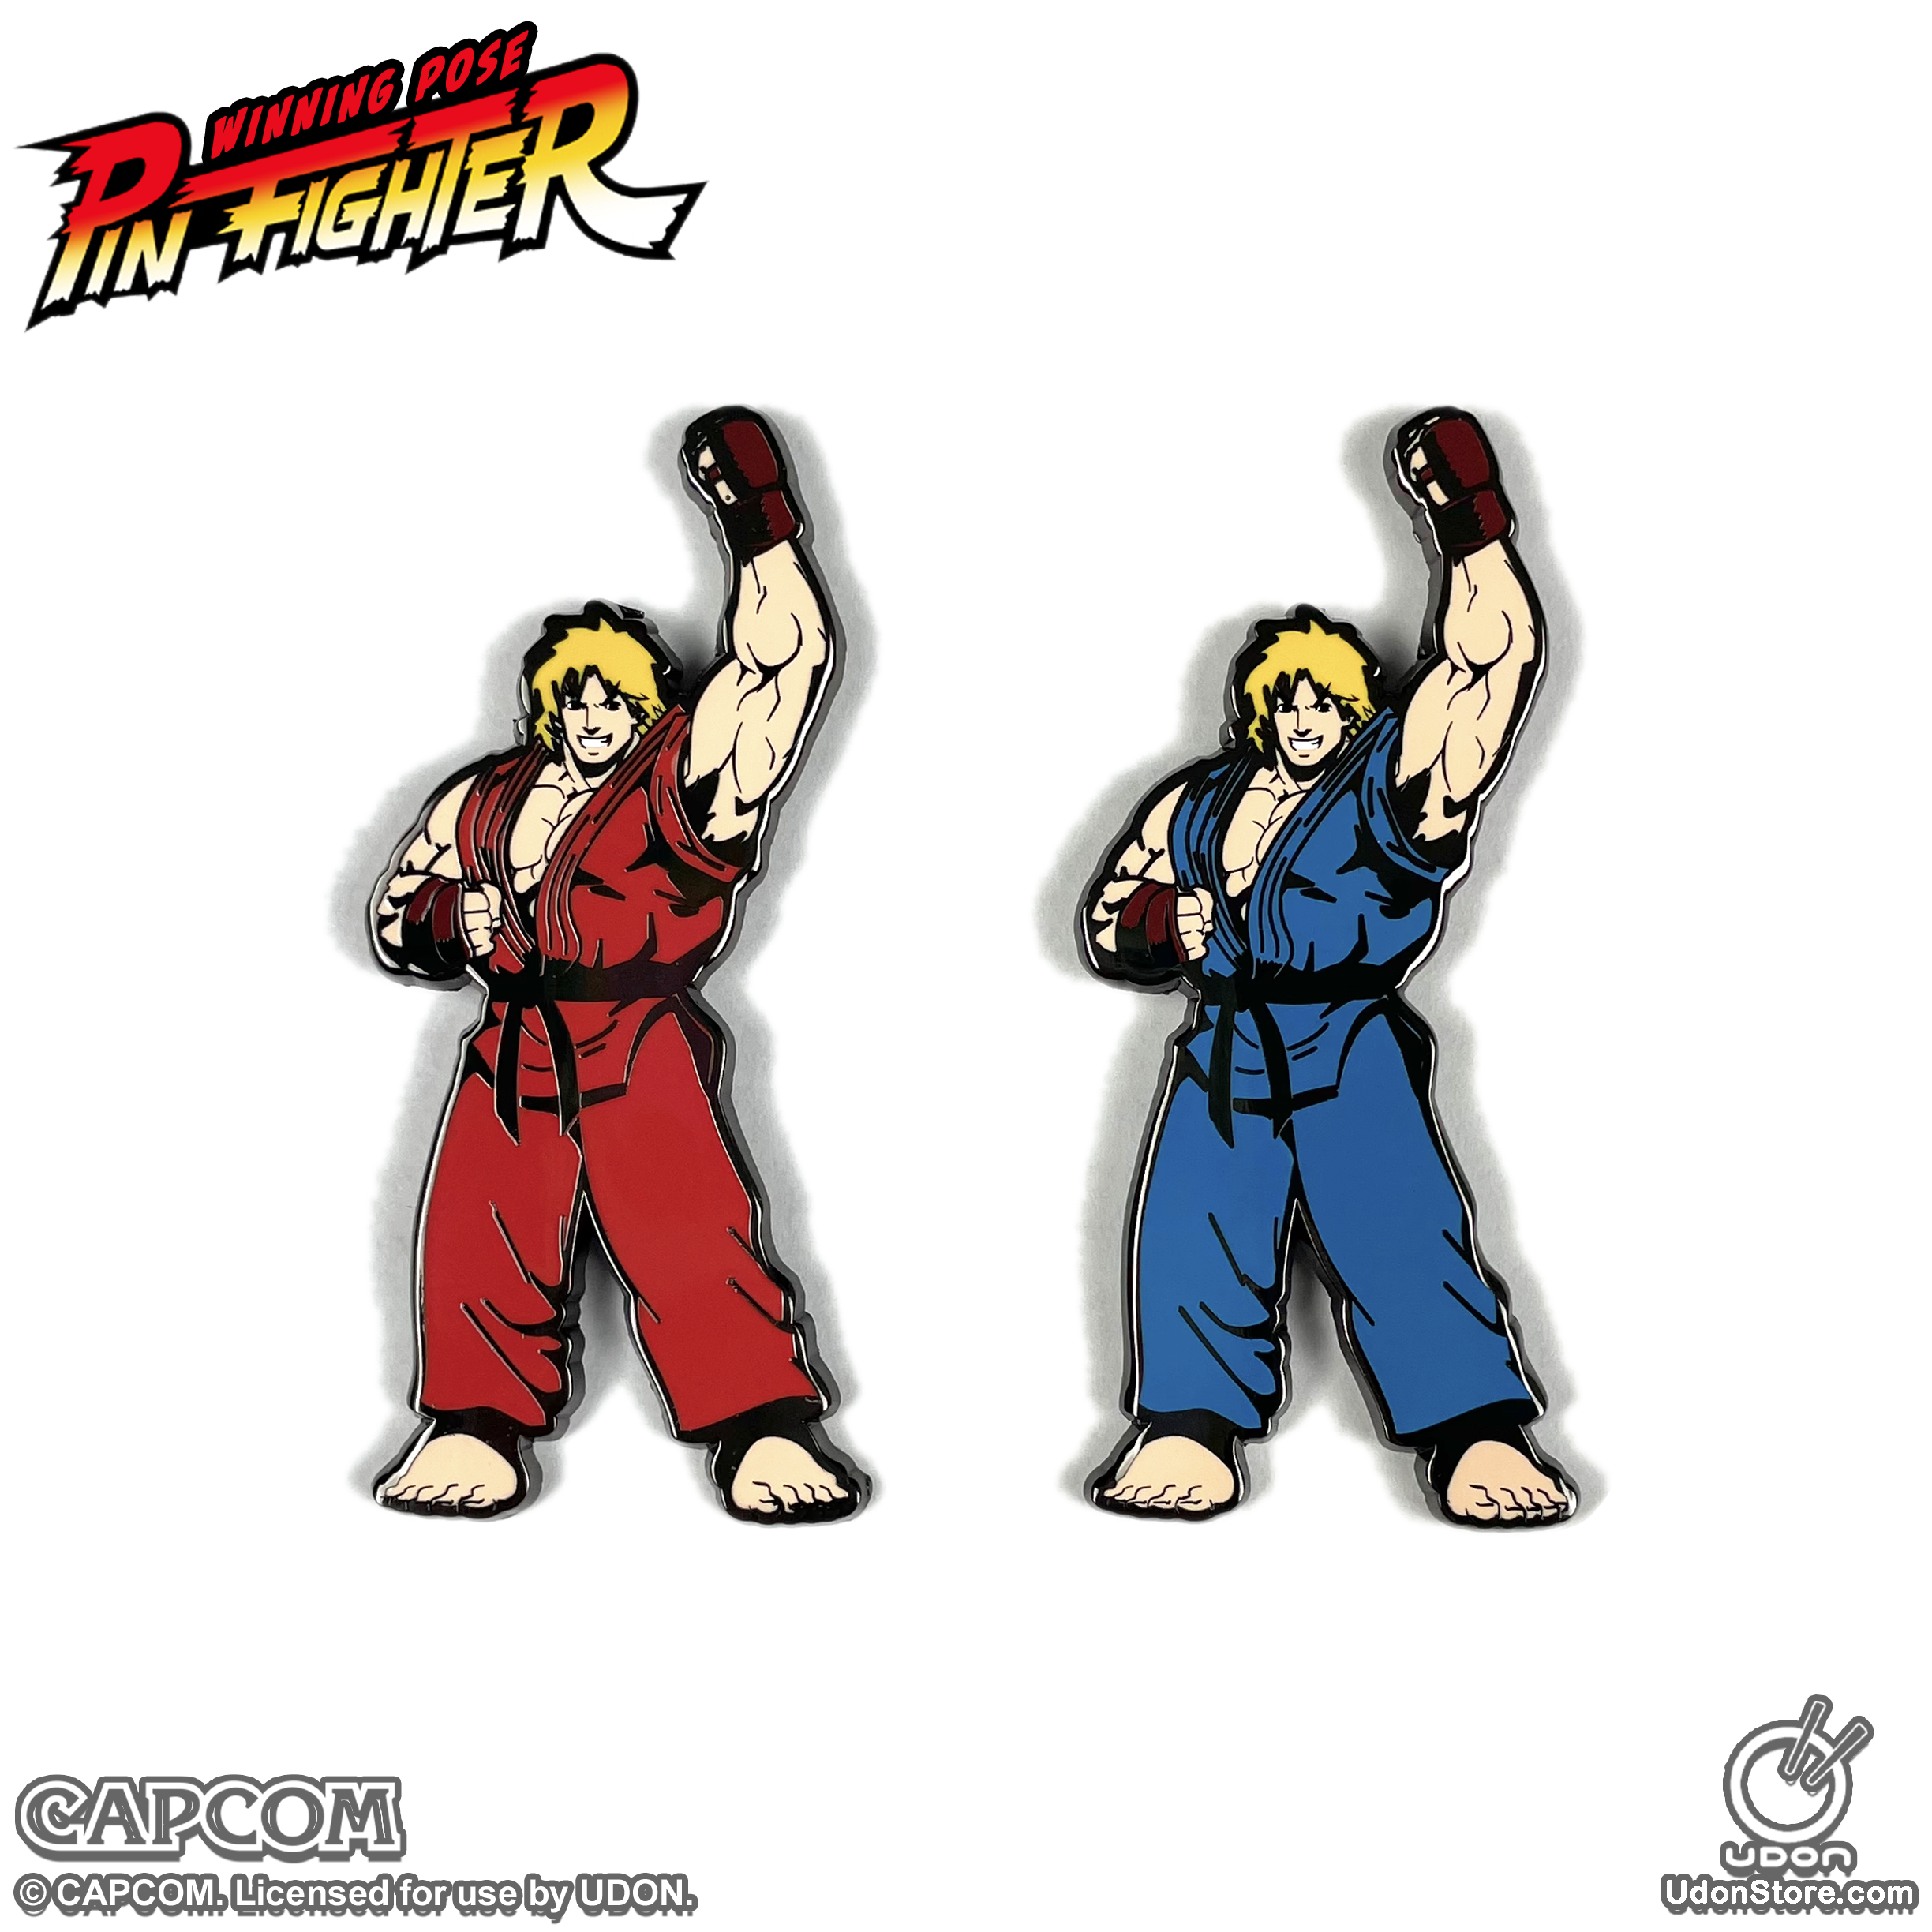 Ken vs Vega [Street Fighter II] 